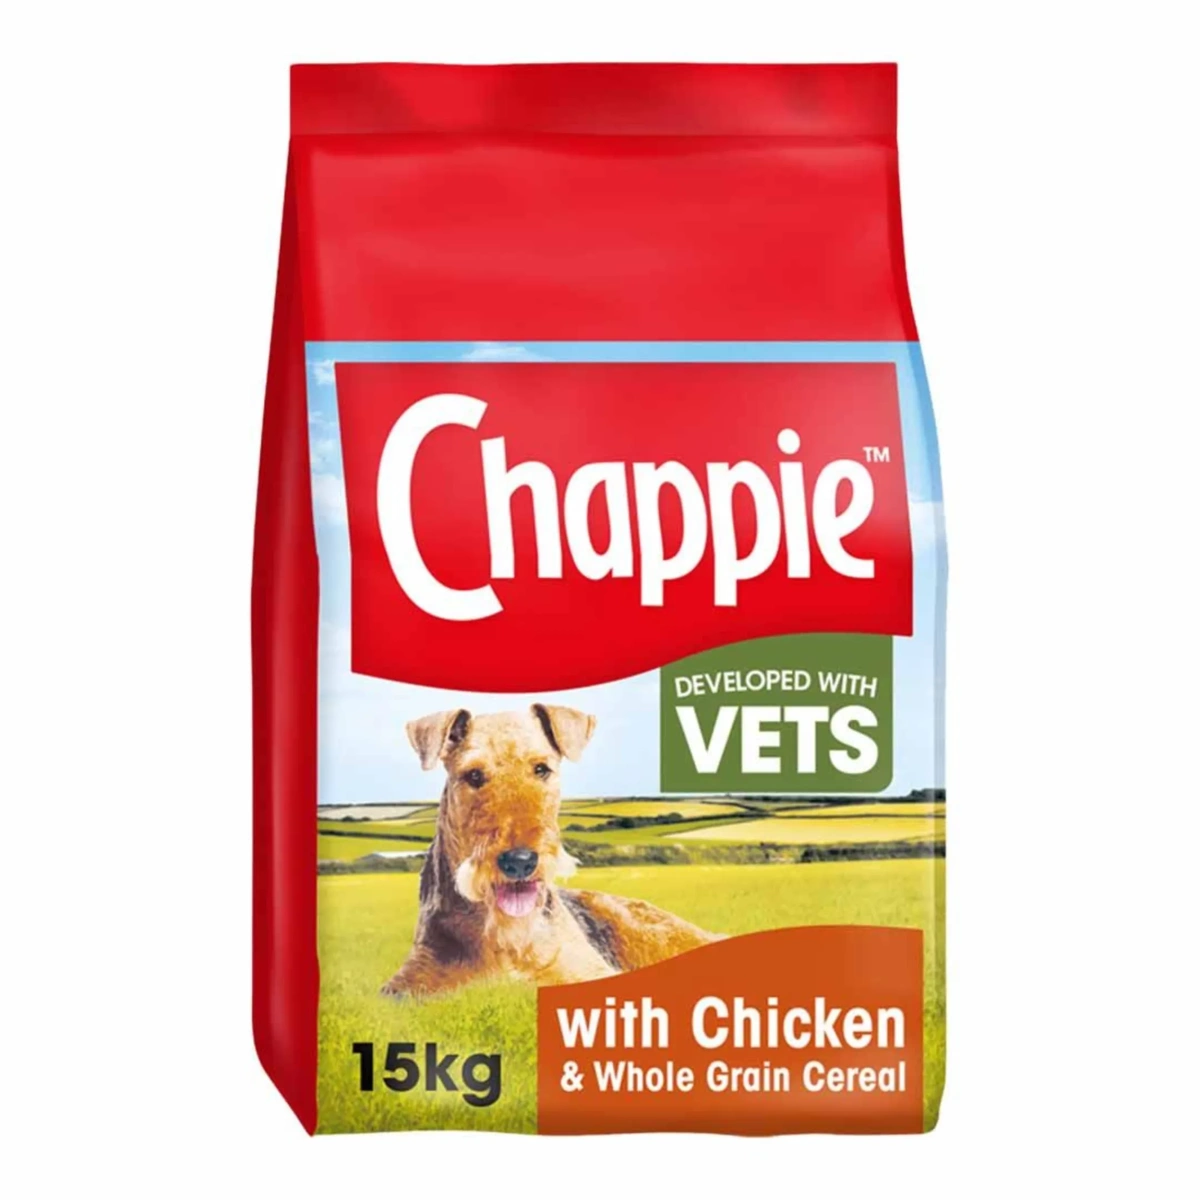 Chappie Chicken 15kg Main Image